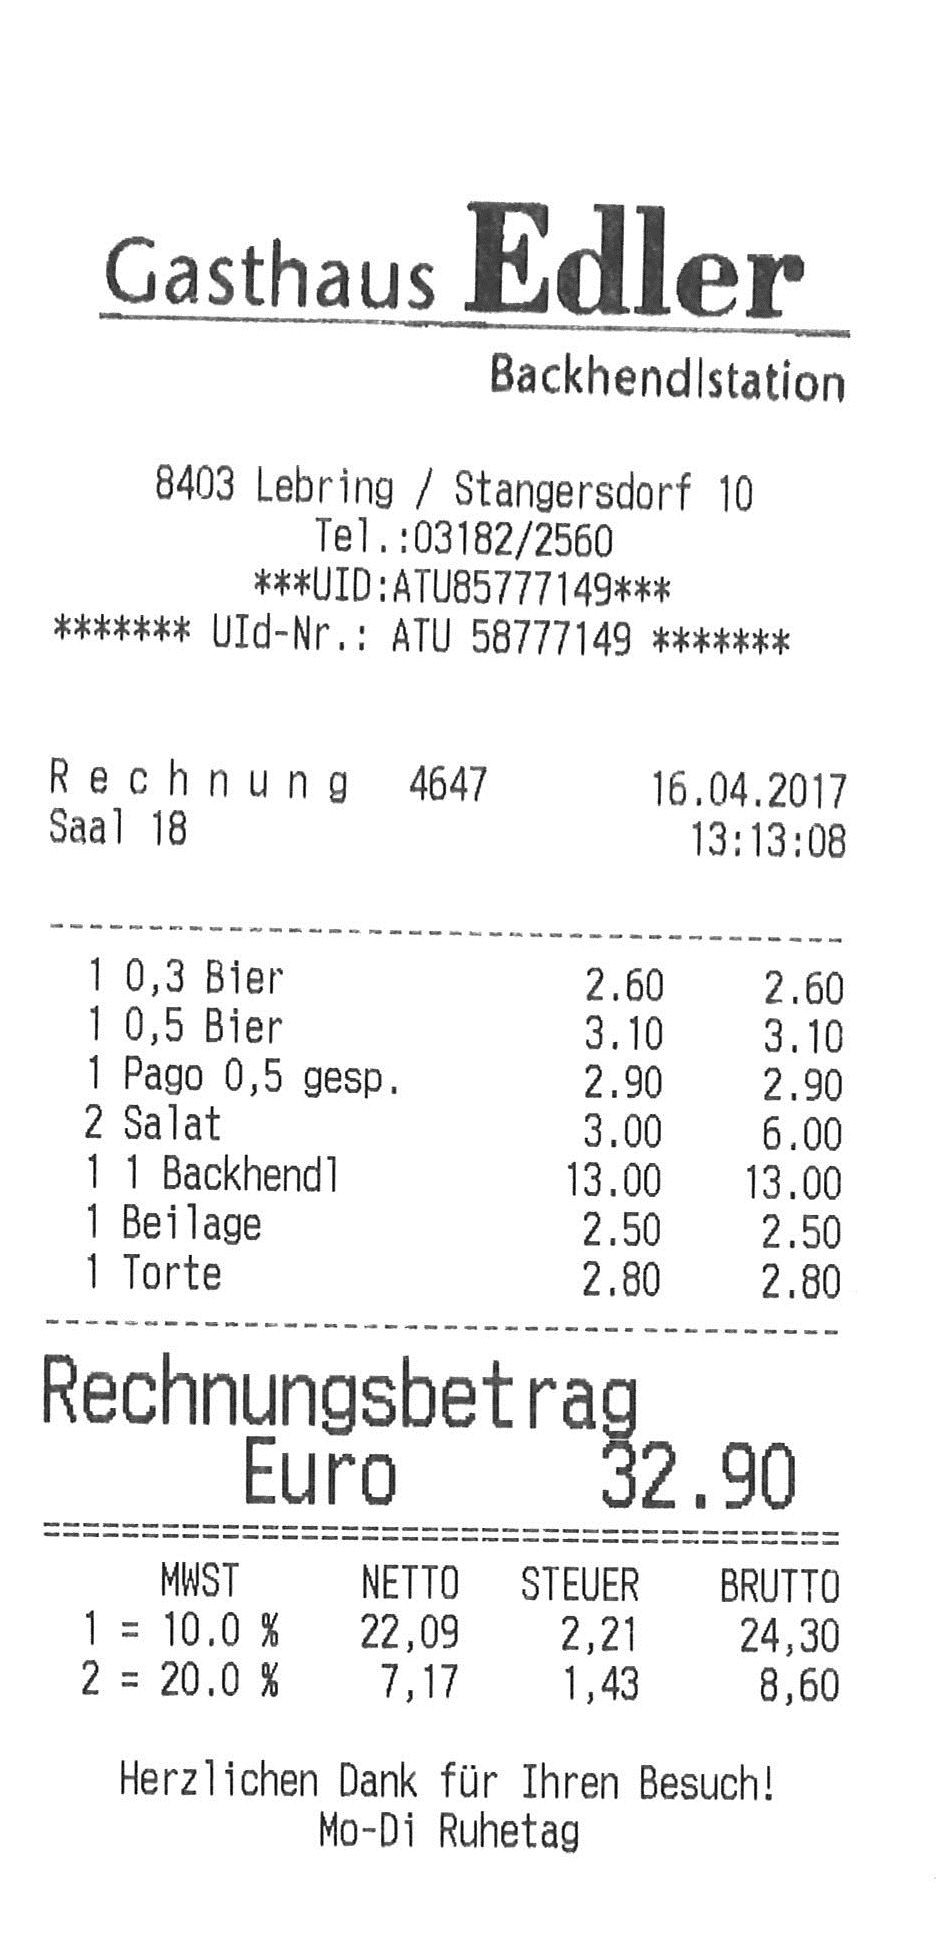 Rechnung 16.04.2017 - Gasthaus Edler ("Backhendlstation") - Lang